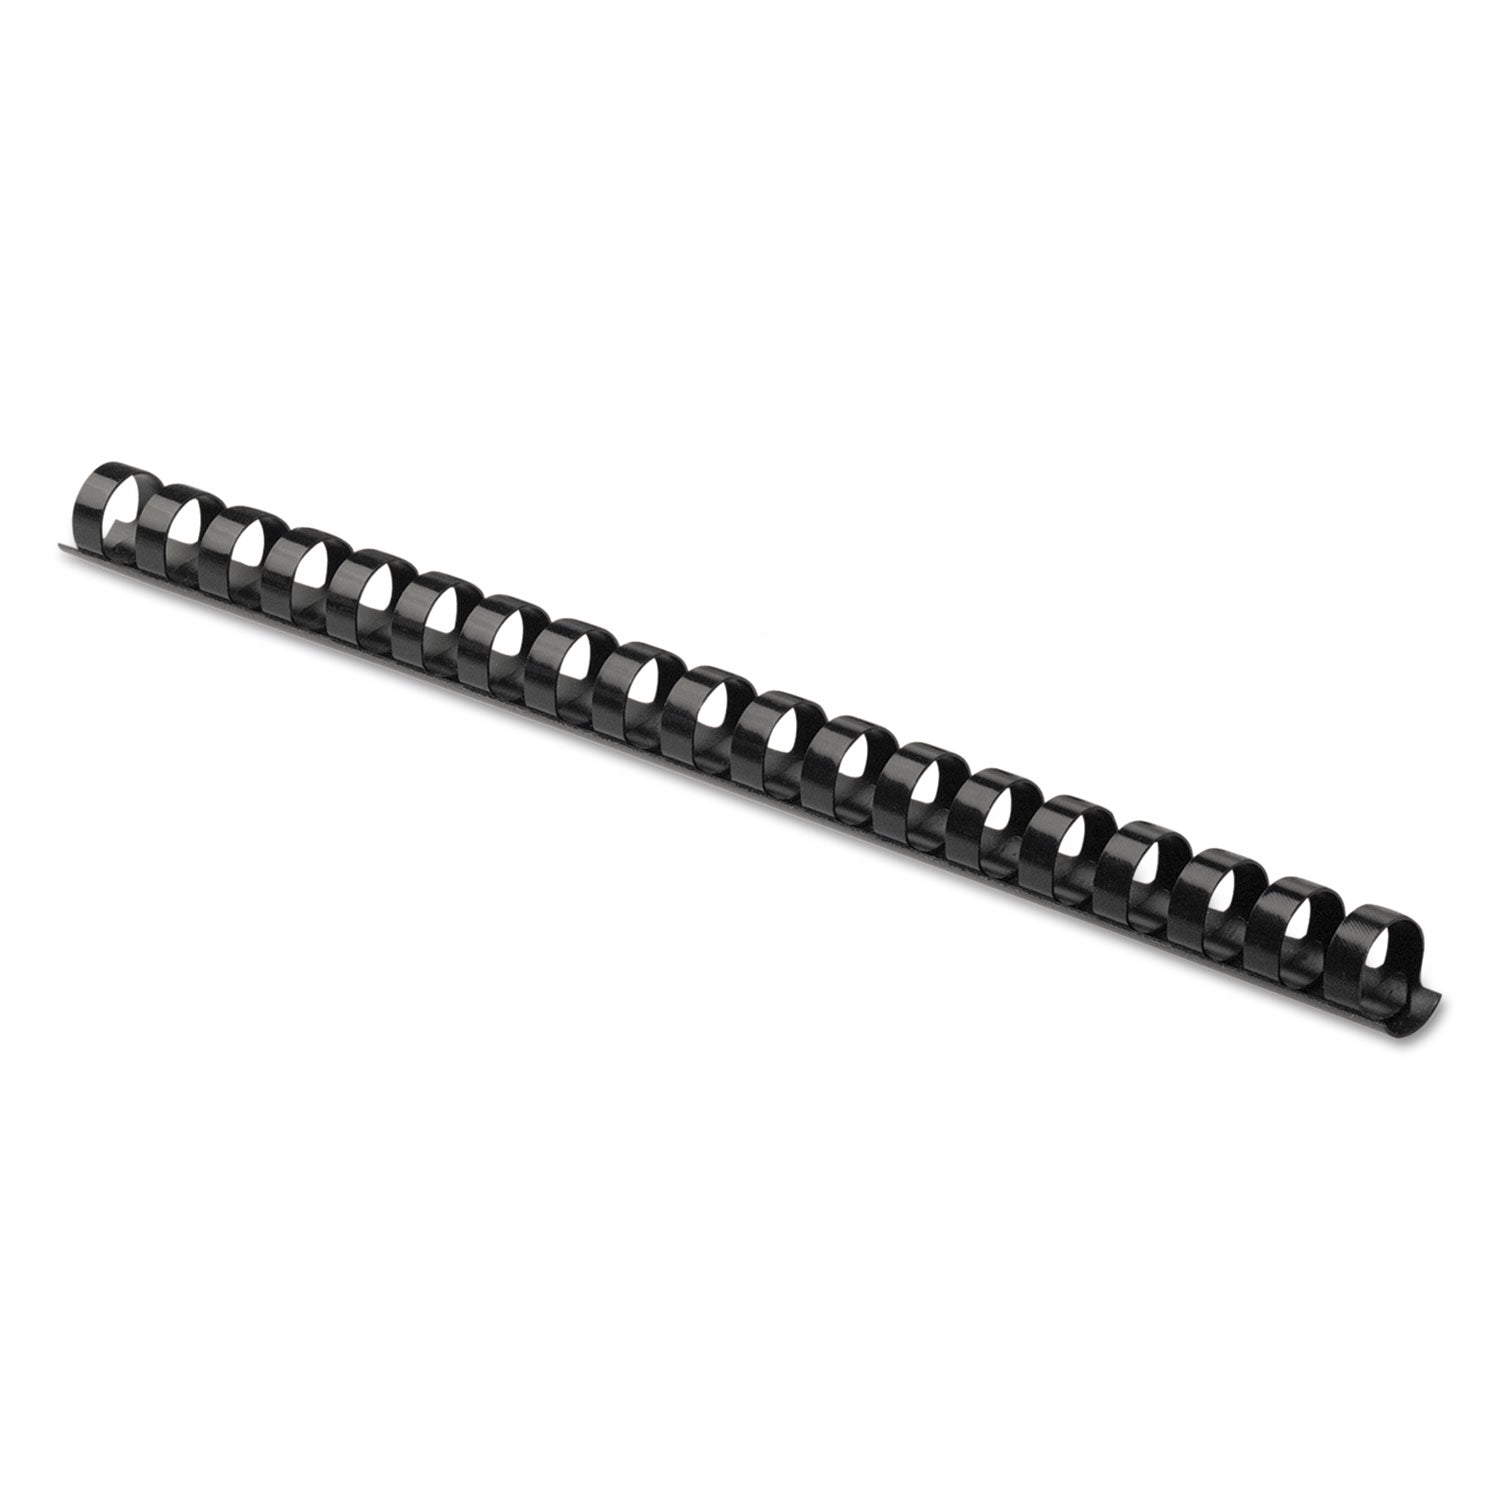 Plastic Comb Bindings, 5/8" Diameter, 120 Sheet Capacity, Black, 100/Pack - 